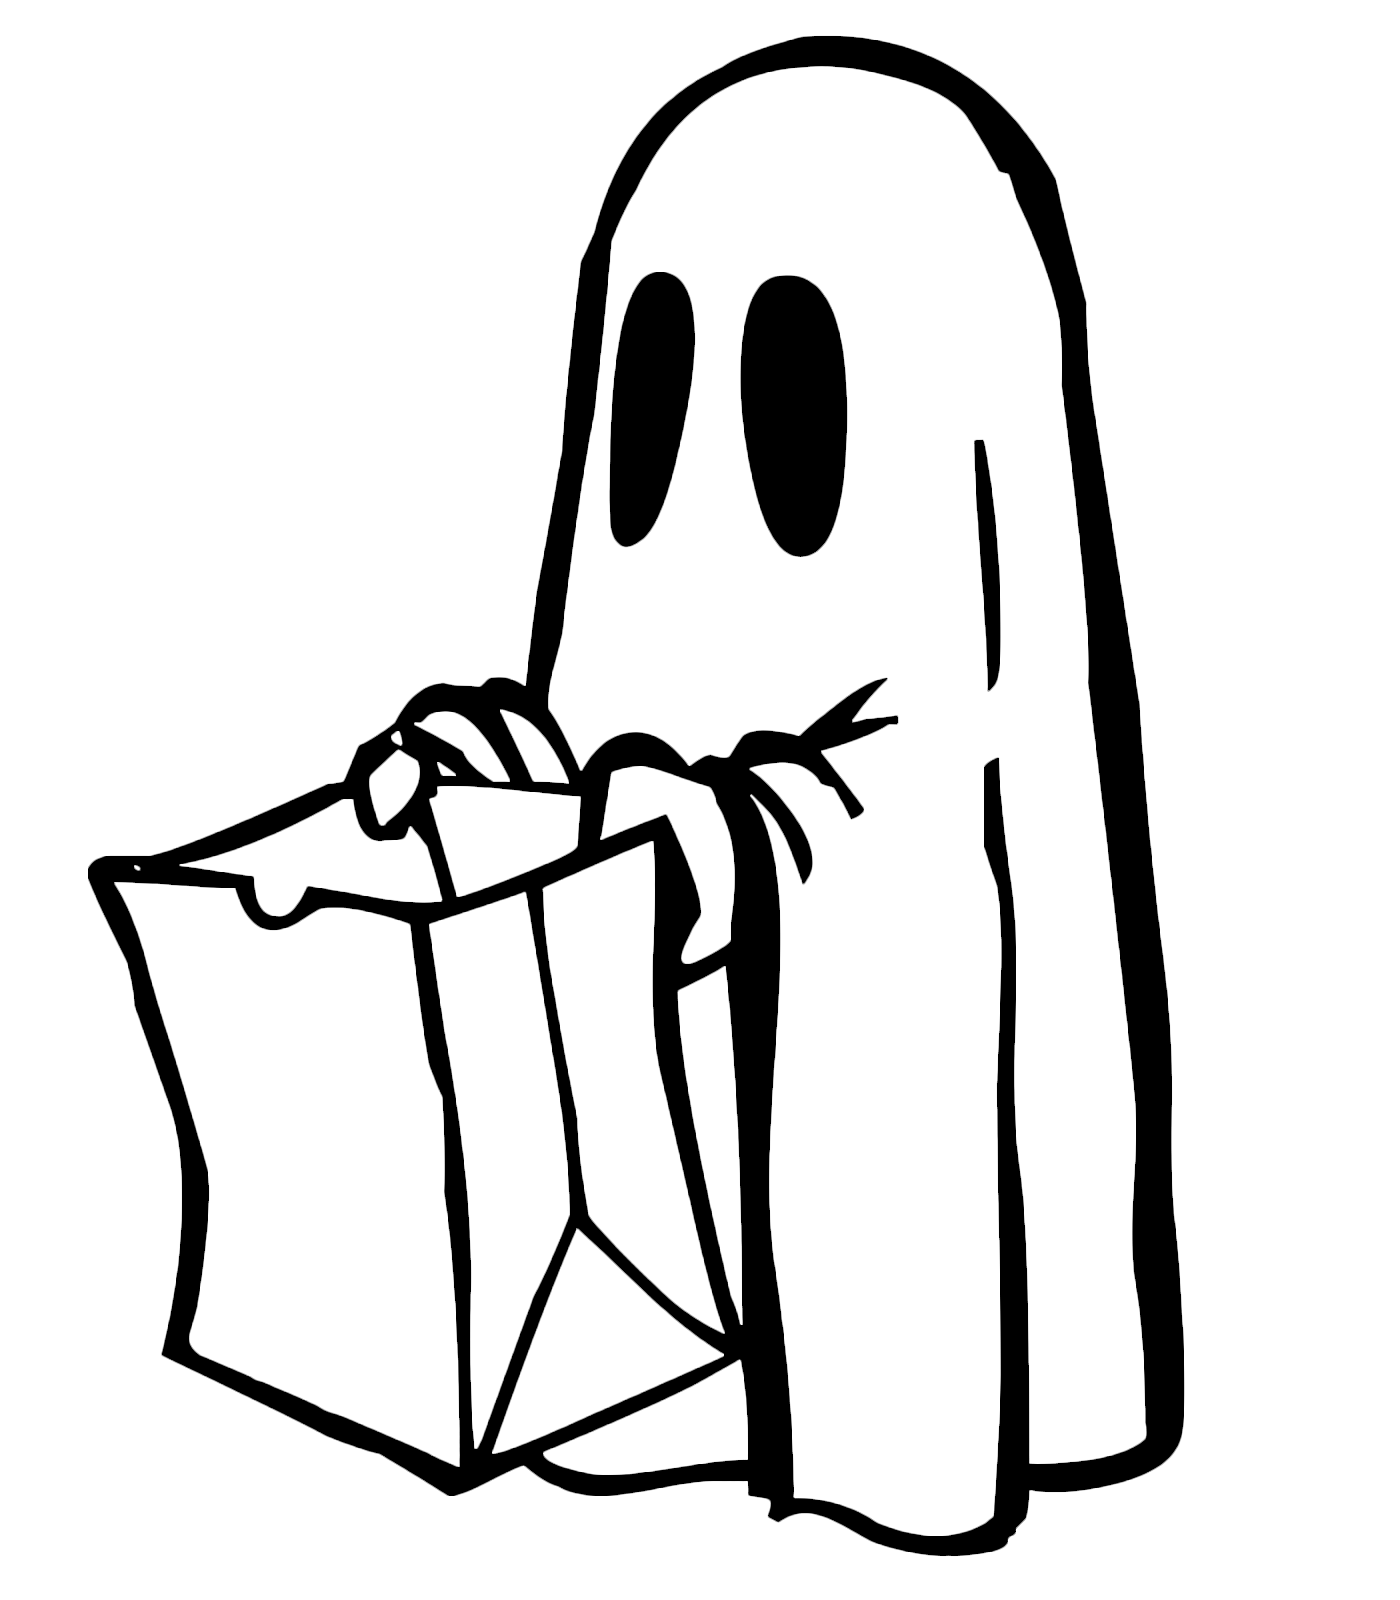 Halloween - Un bambino vestito da fantasma chiede dolcetto o scherzetto